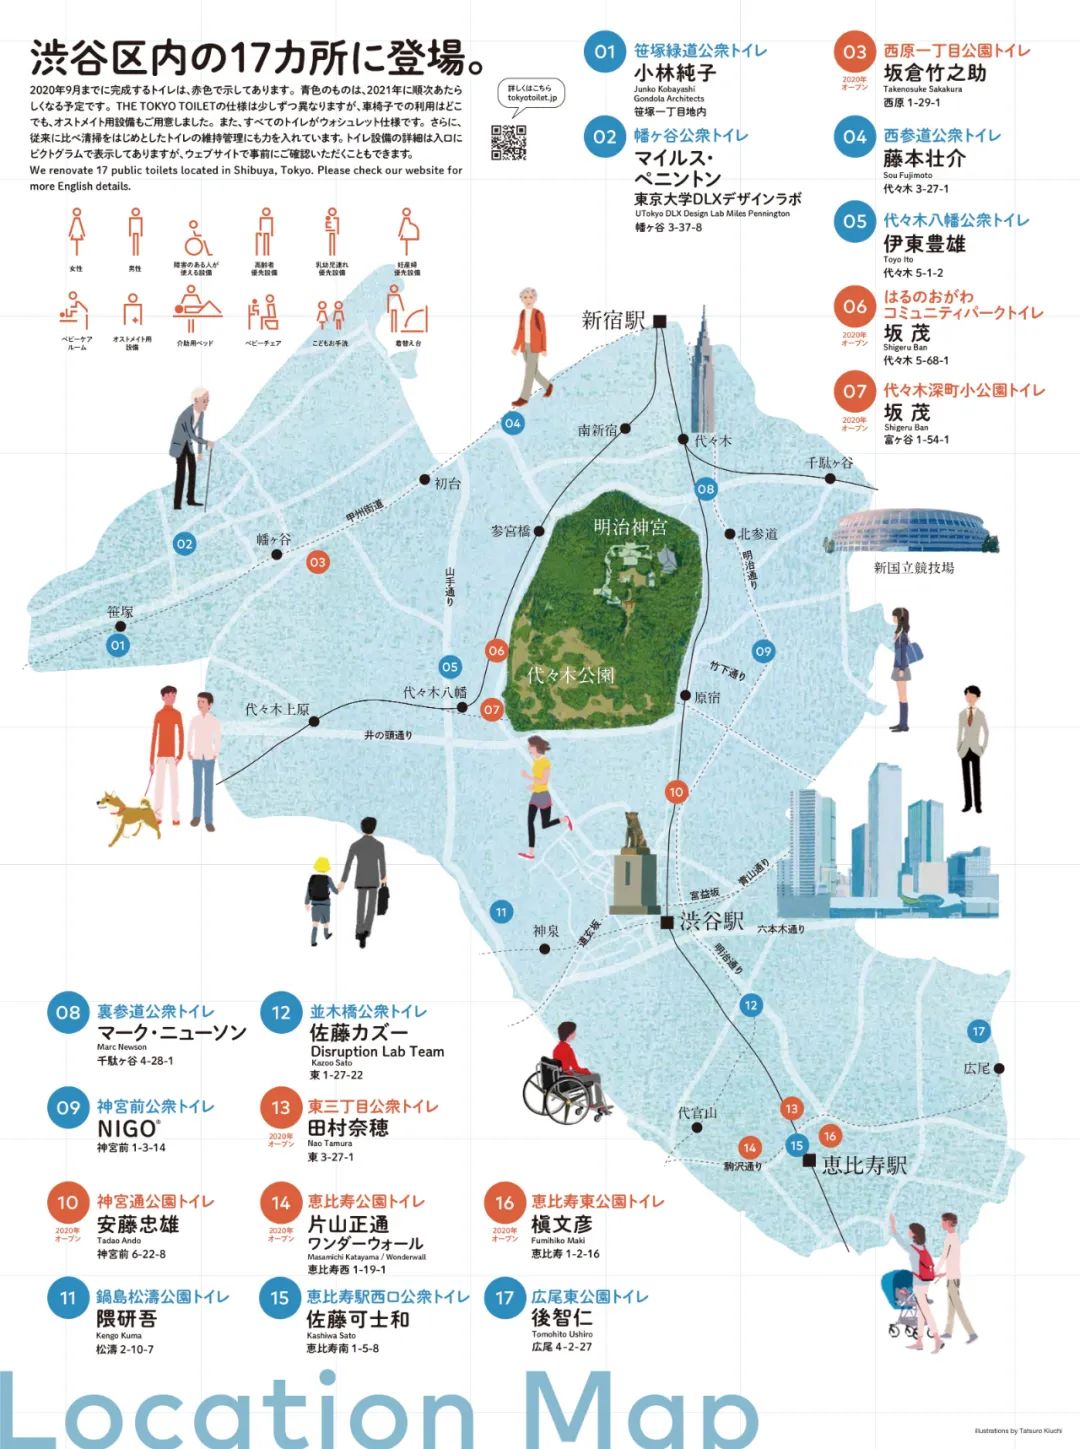 “东京公厕”项目设计师和地点示意图